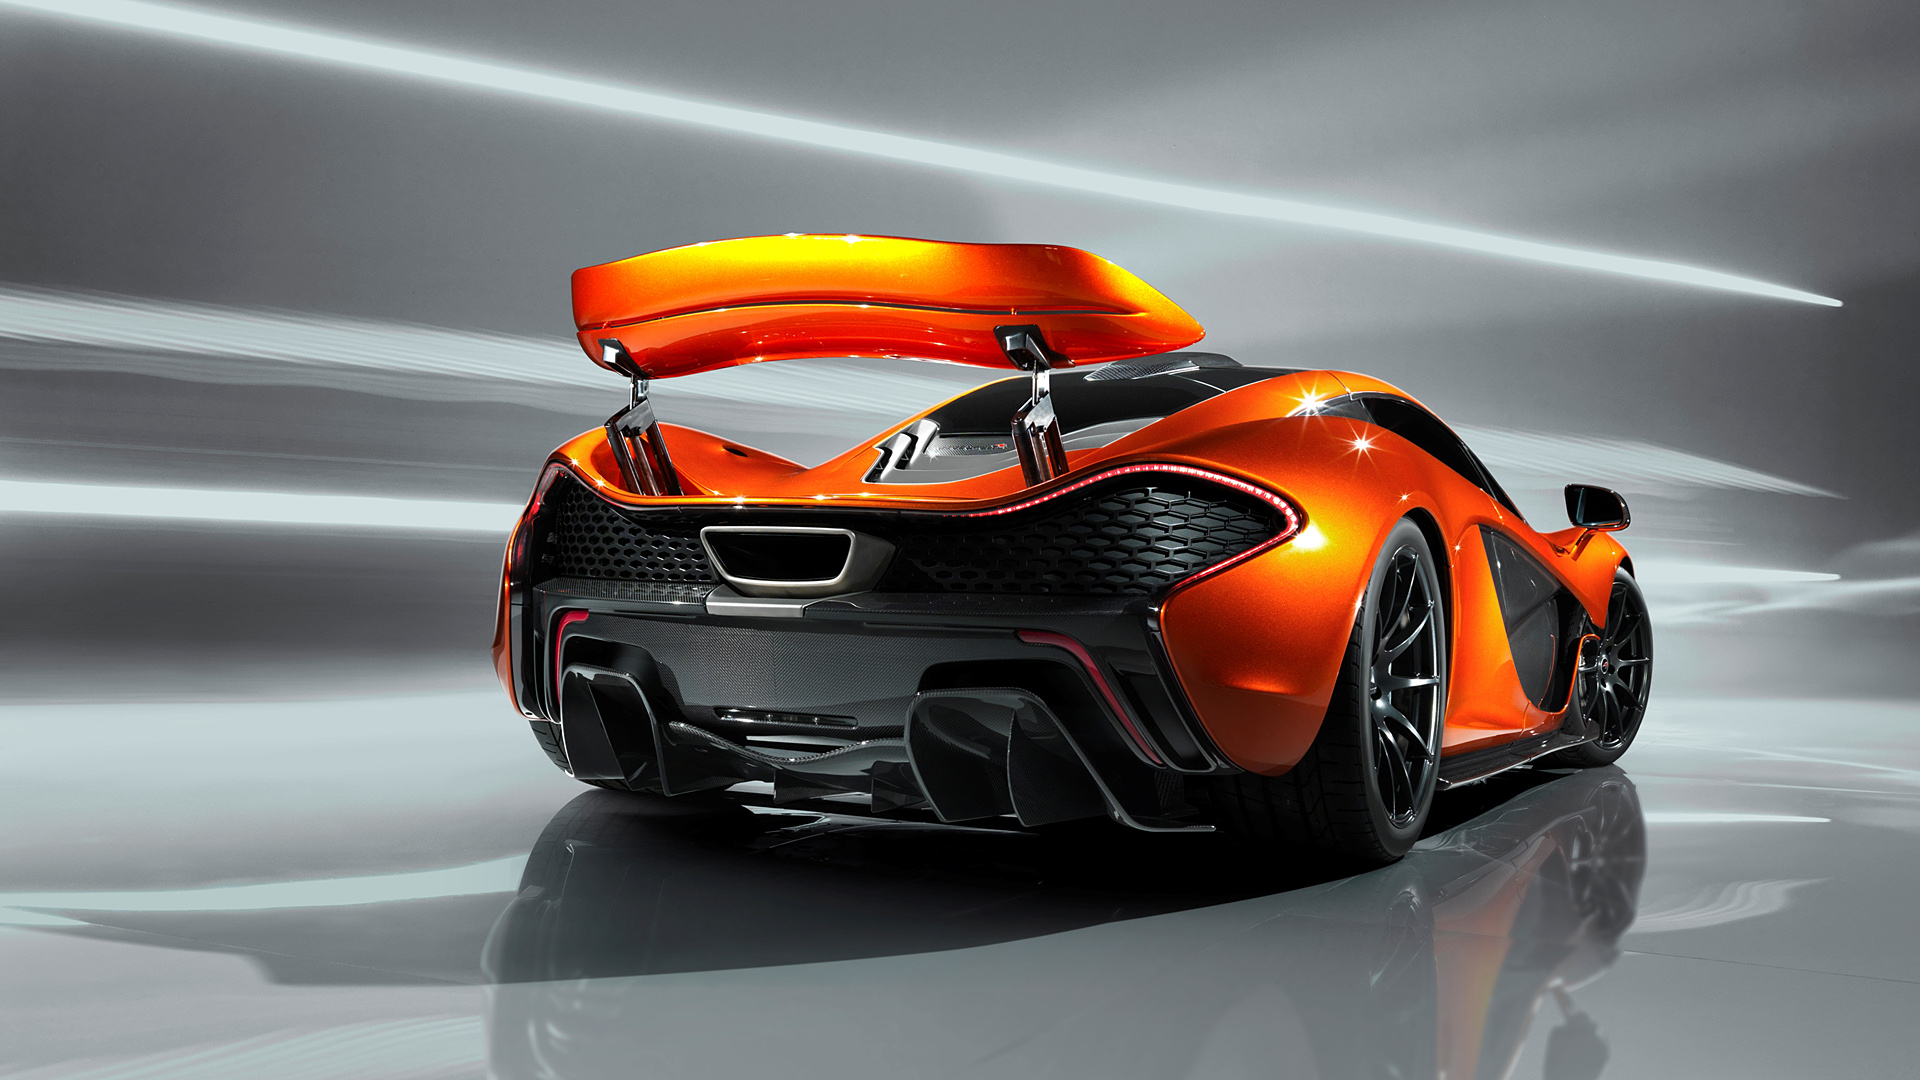  2012 McLaren P1 Concept Wallpaper.